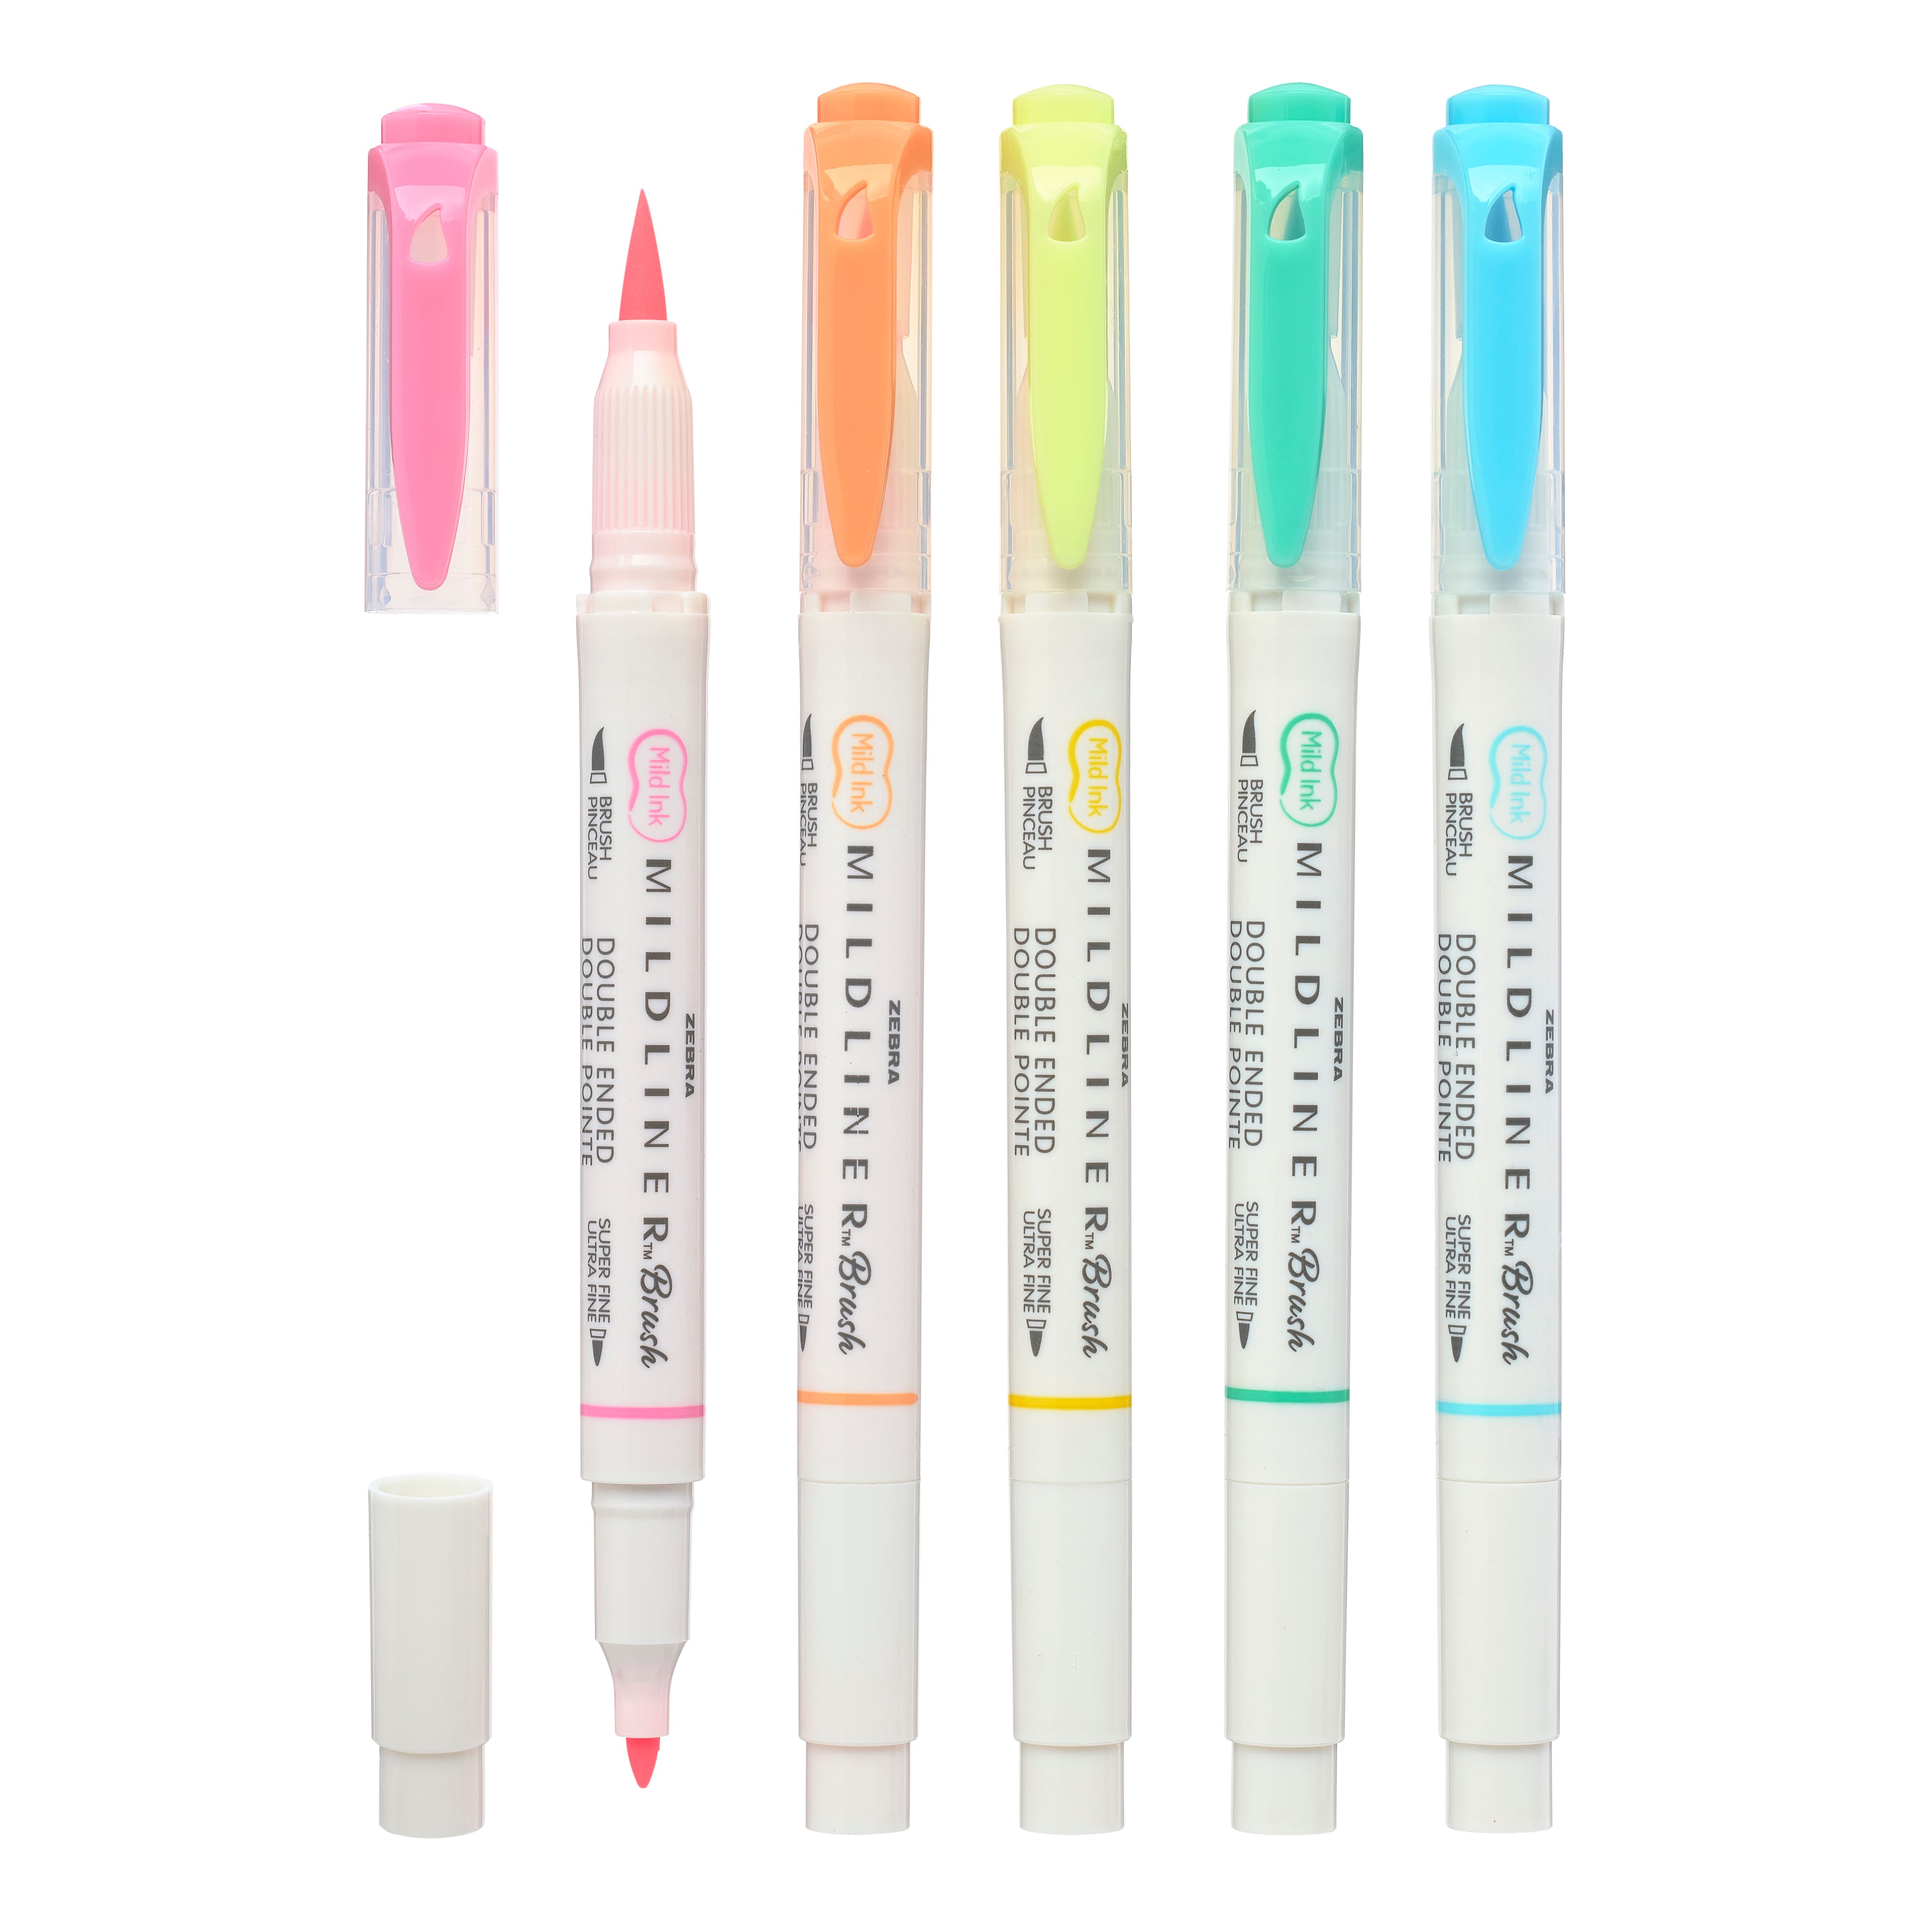 Diy White Pen/Homemade Diy White Pen/How to make white Pen at home/white  Pen making/White ink/Refill 